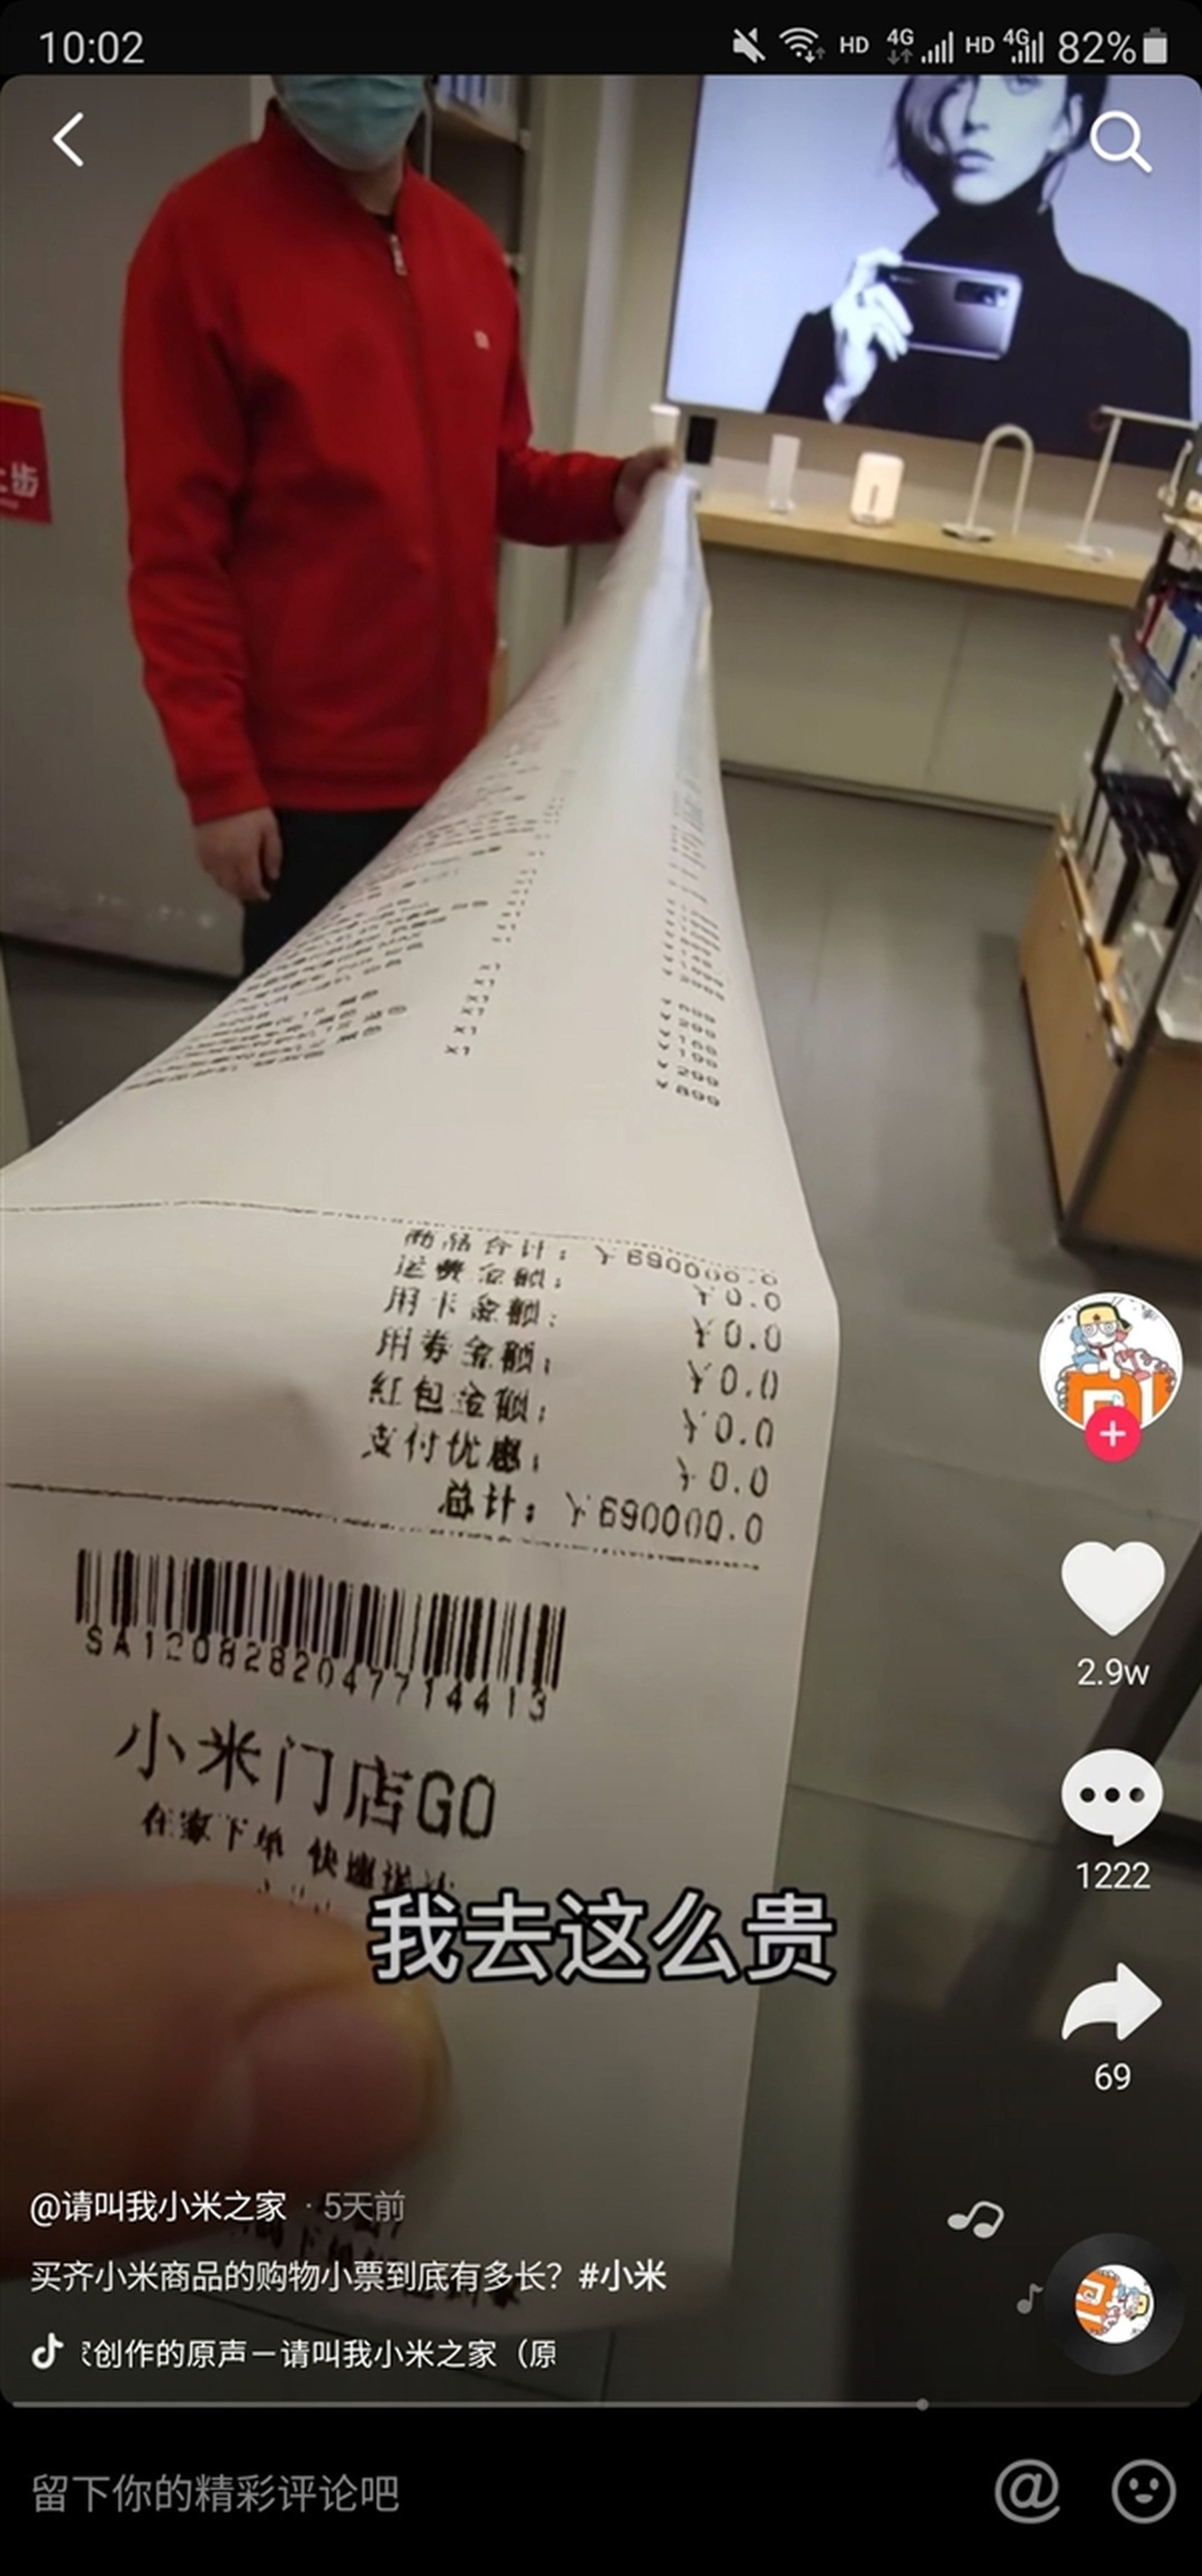 Usuario de Xiaomi compra productos en una Mi Store